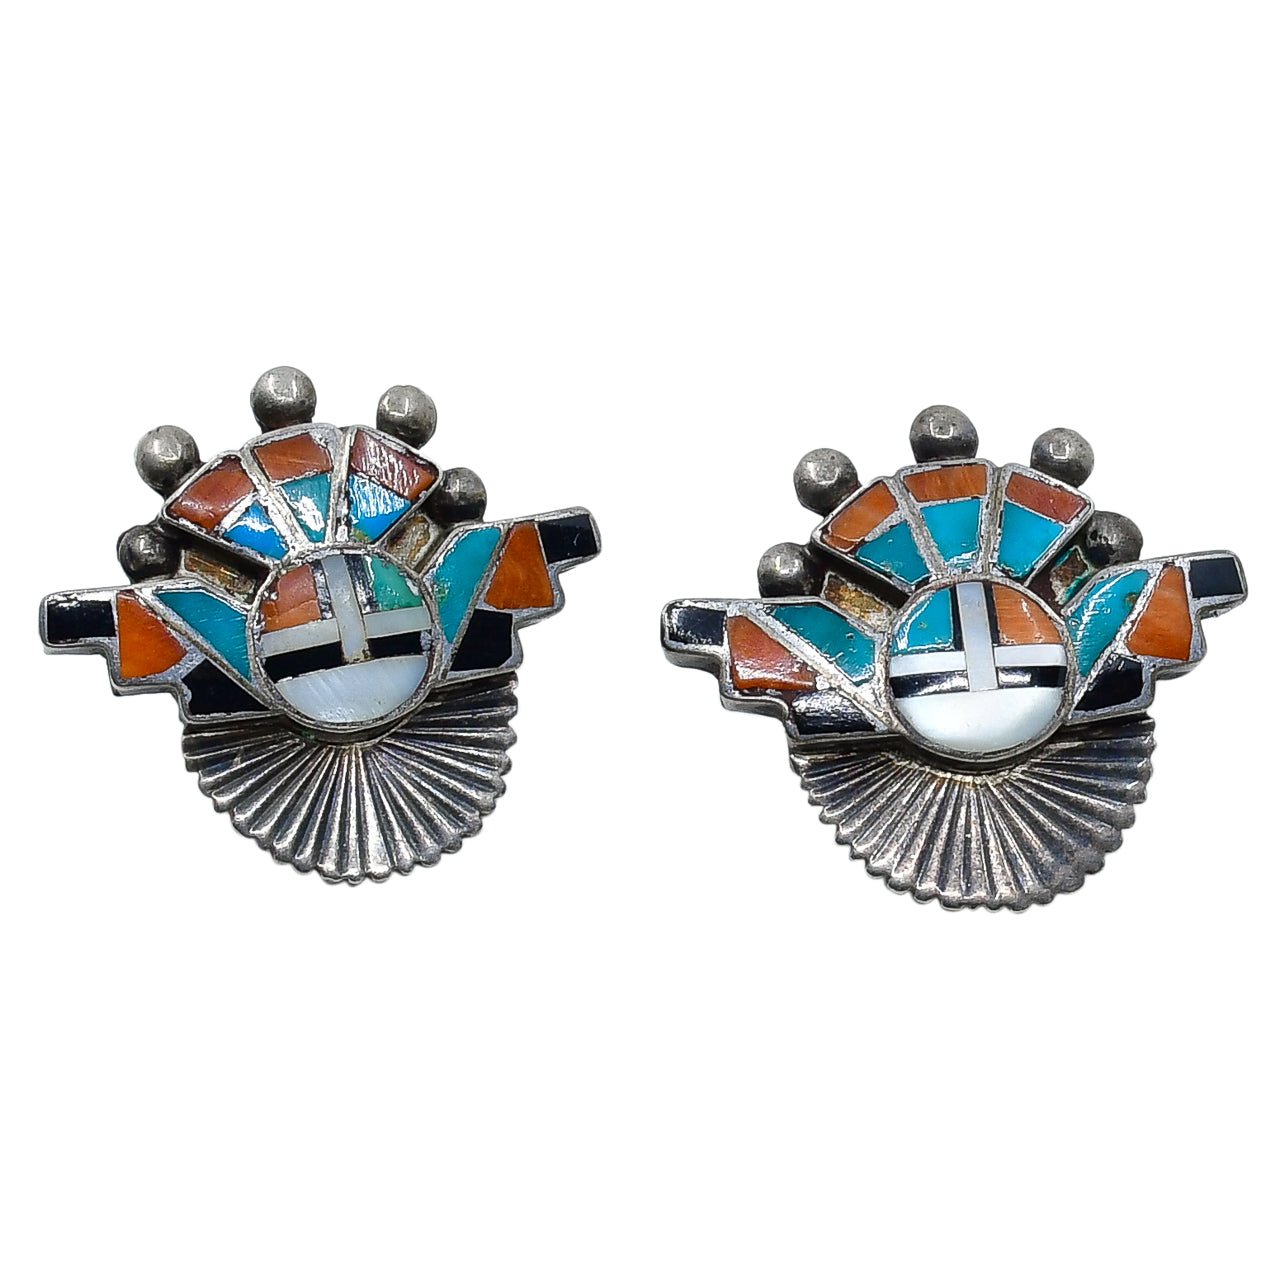 Vintage Zuni Sun Katsina Pin Pendant and Earring Set - Turquoise & Tufa